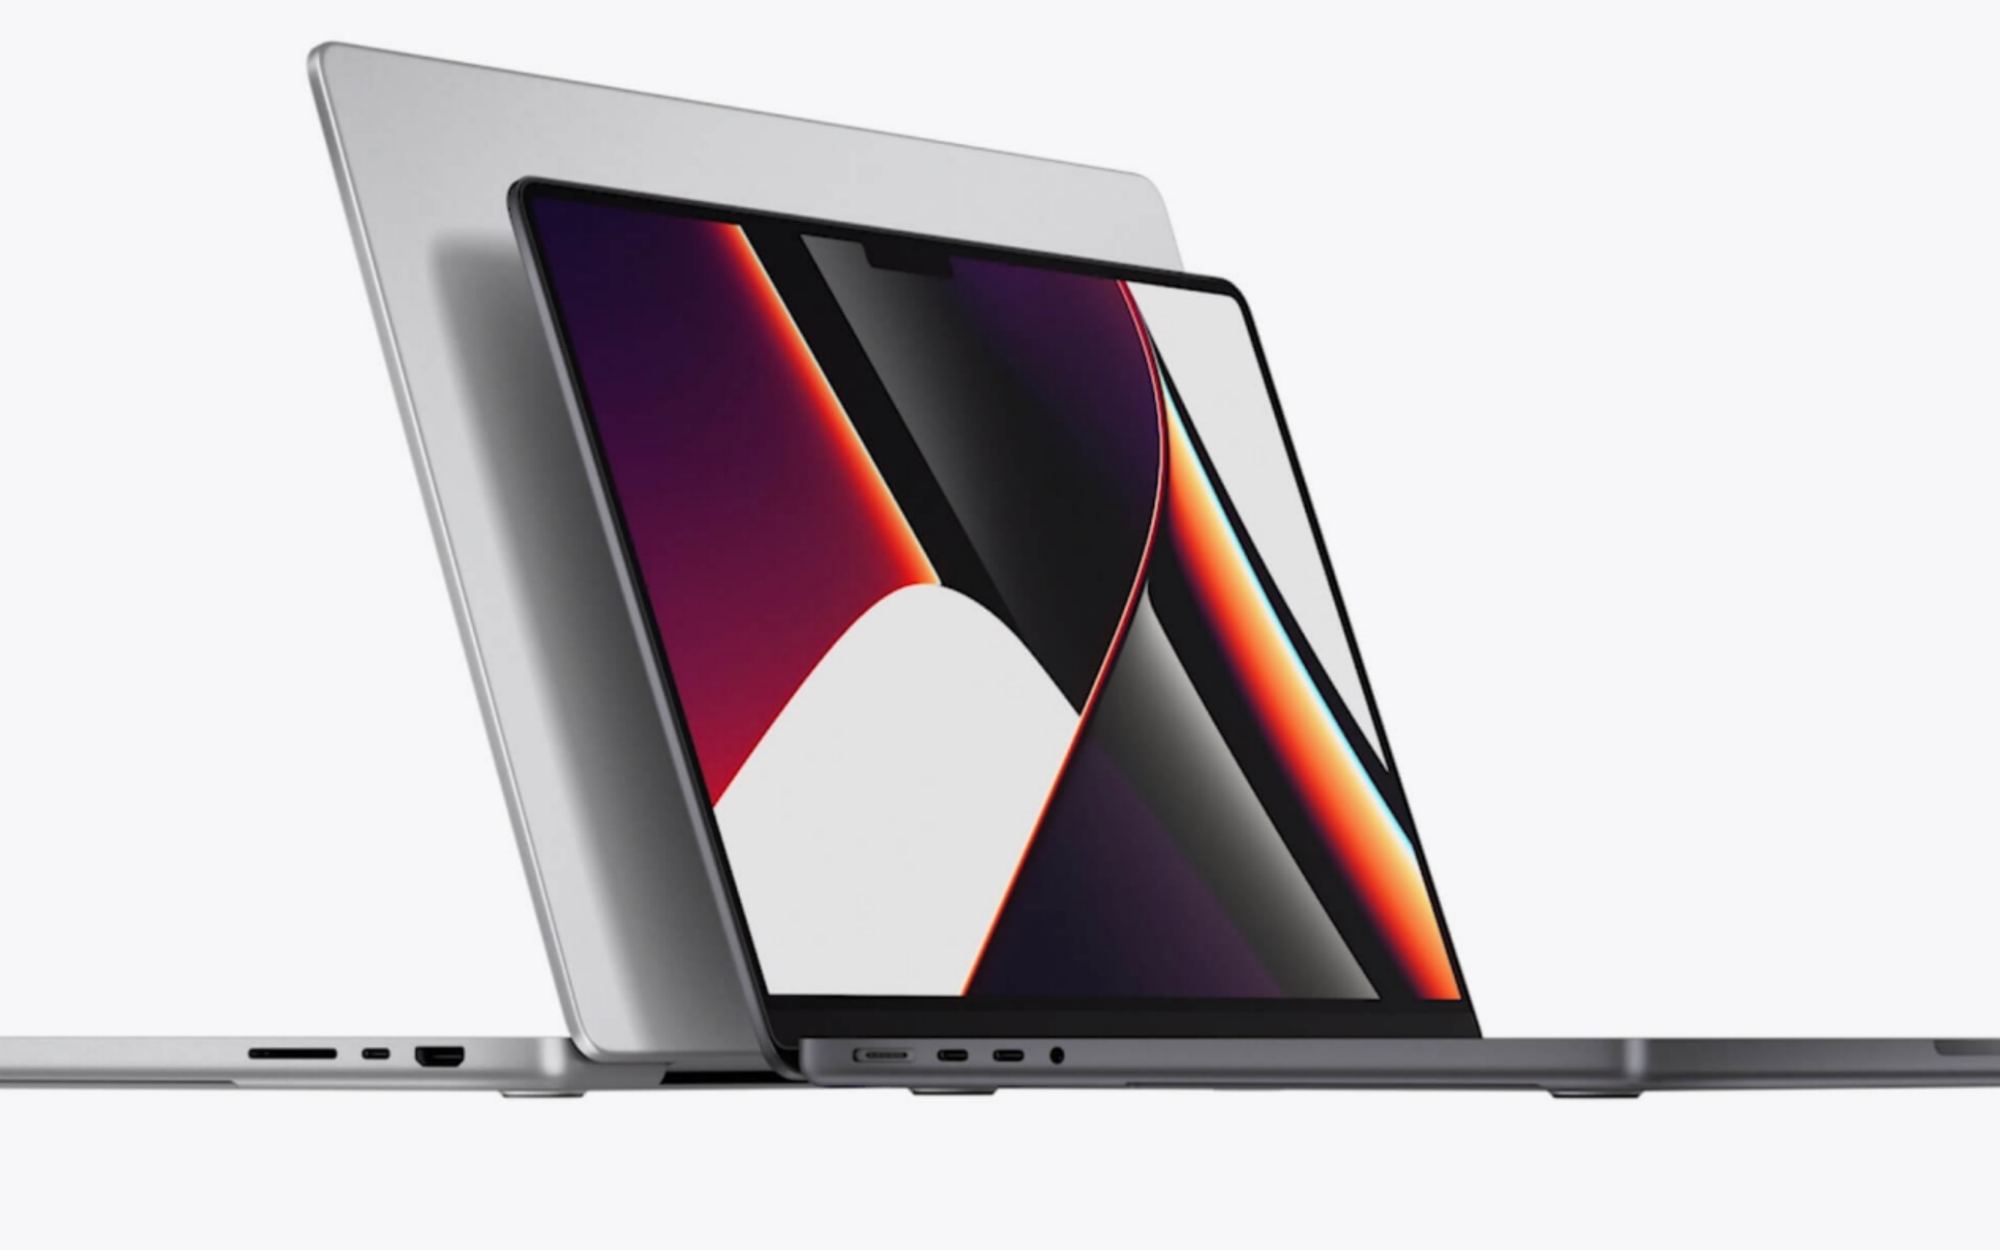 MacBook Pro được đại lý tại Việt Nam báo giá lên tới gần 70 triệu đồng, đắt hơn 13 triệu so với giá Apple công bố?